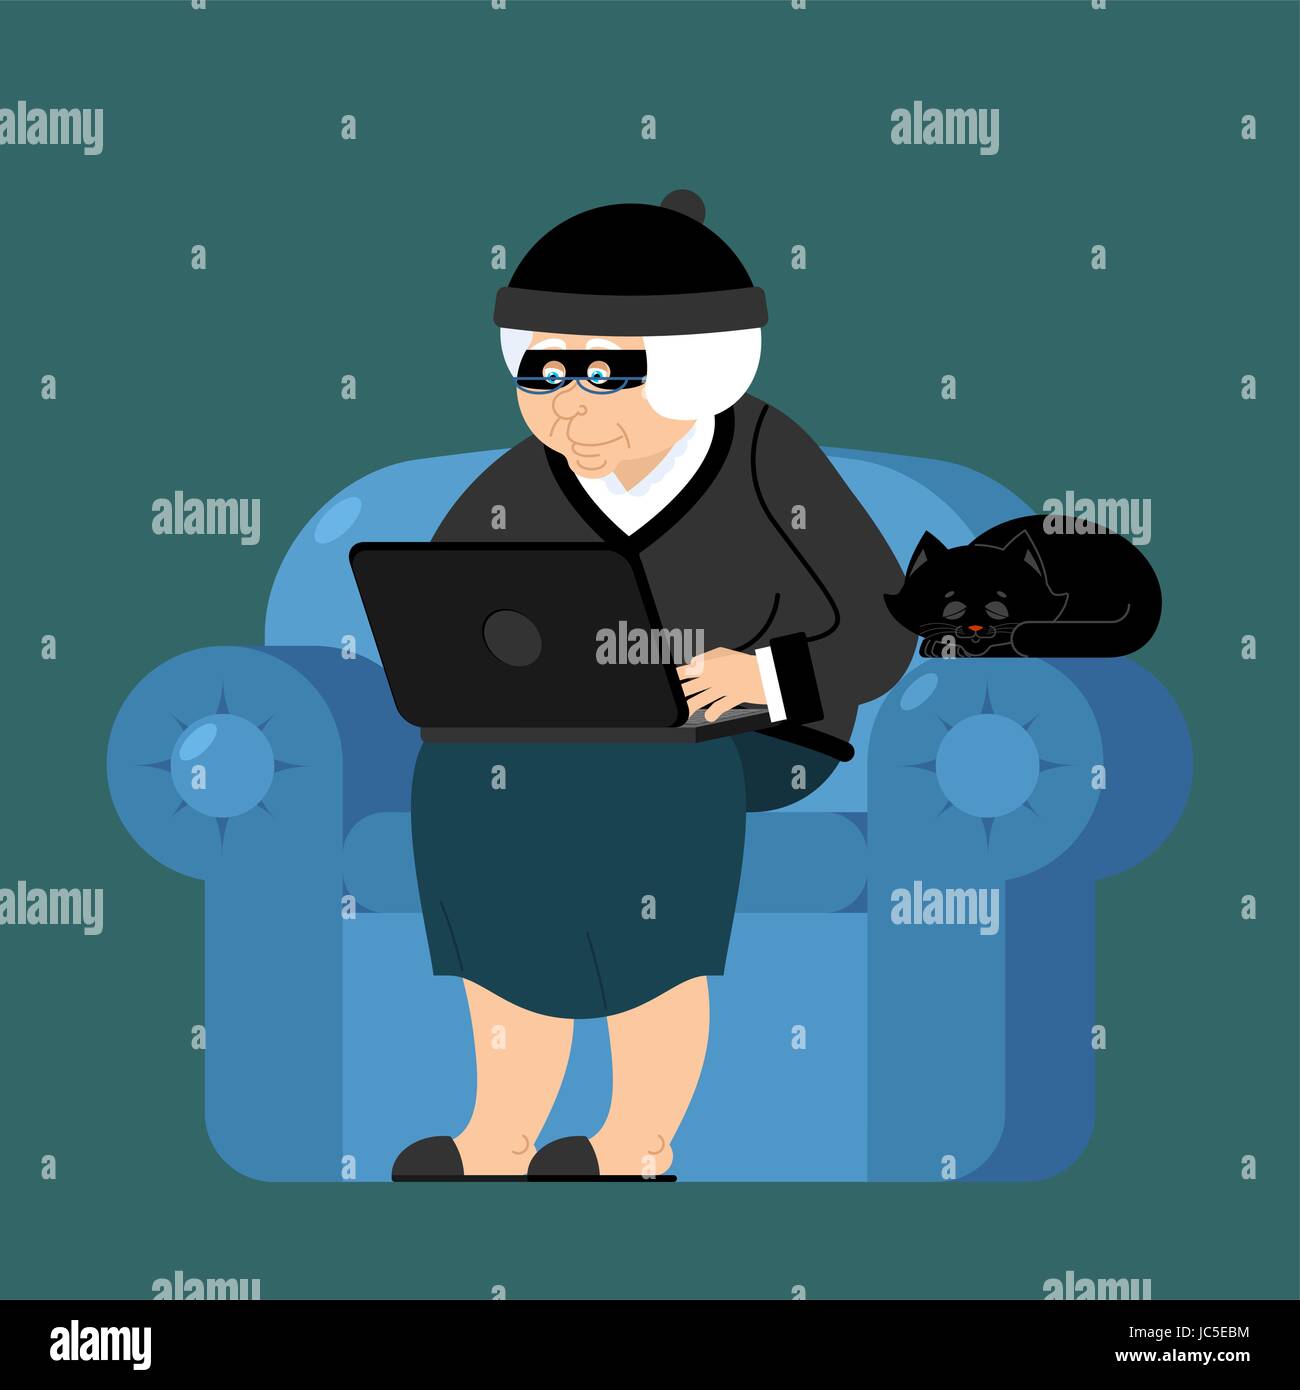 Grand-mère pirate est assis sur un fauteuil avec ordinateur portable et chat. grand-mère est programmeur voleur. internet la sécurité informatique. Vieille Femme et PC Illustration de Vecteur